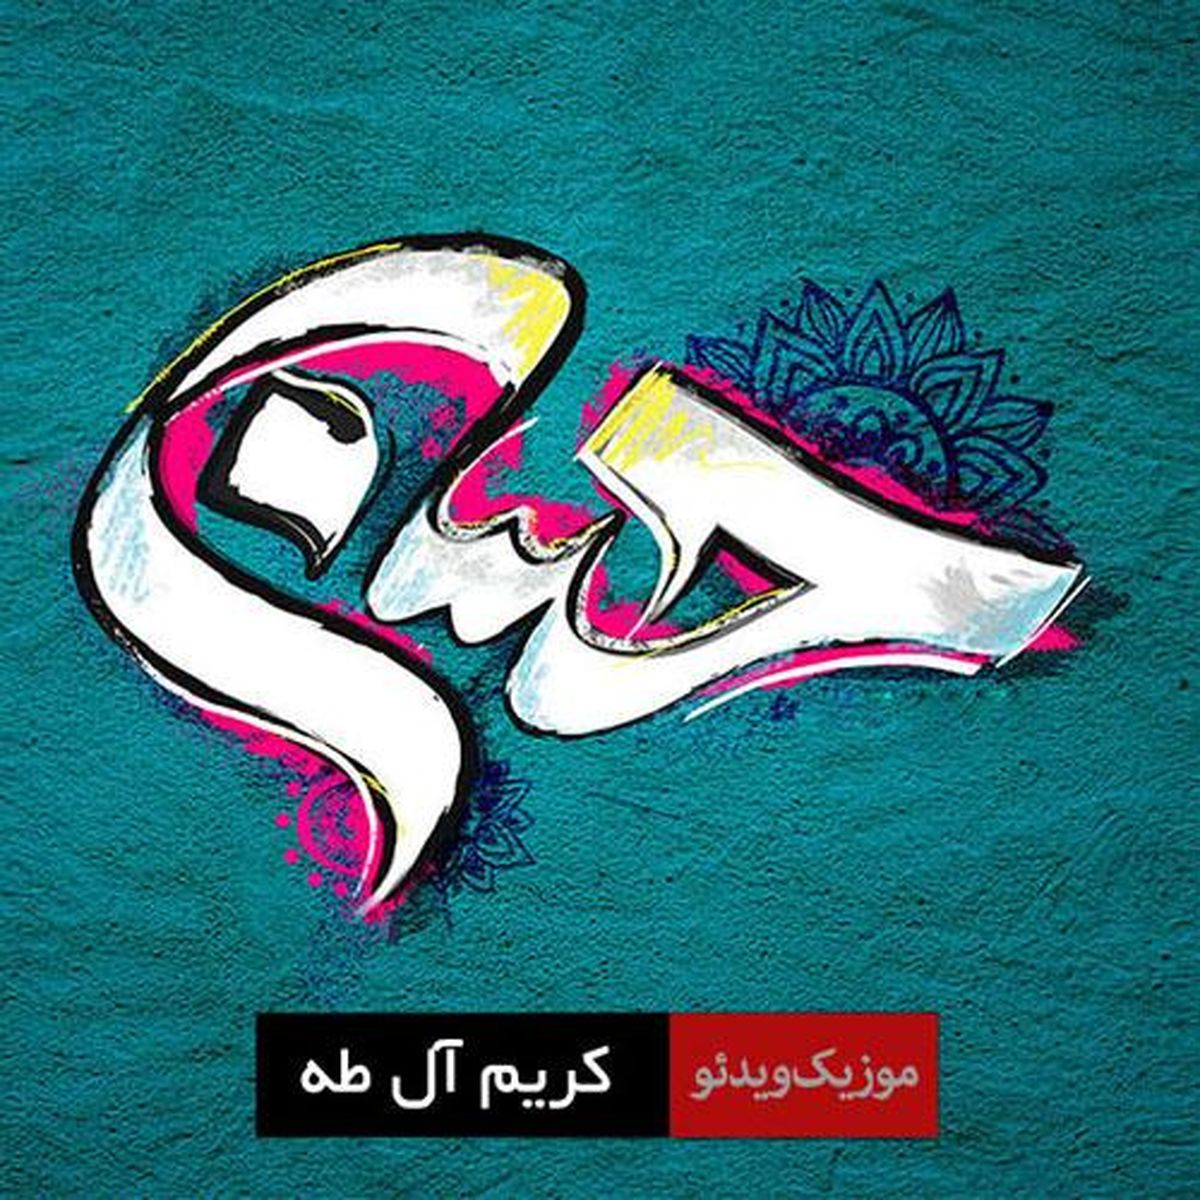 نماهنگ "کریم آل طه" به مناسبت میلاد امام حسن مجتبی (ع) + فیلم